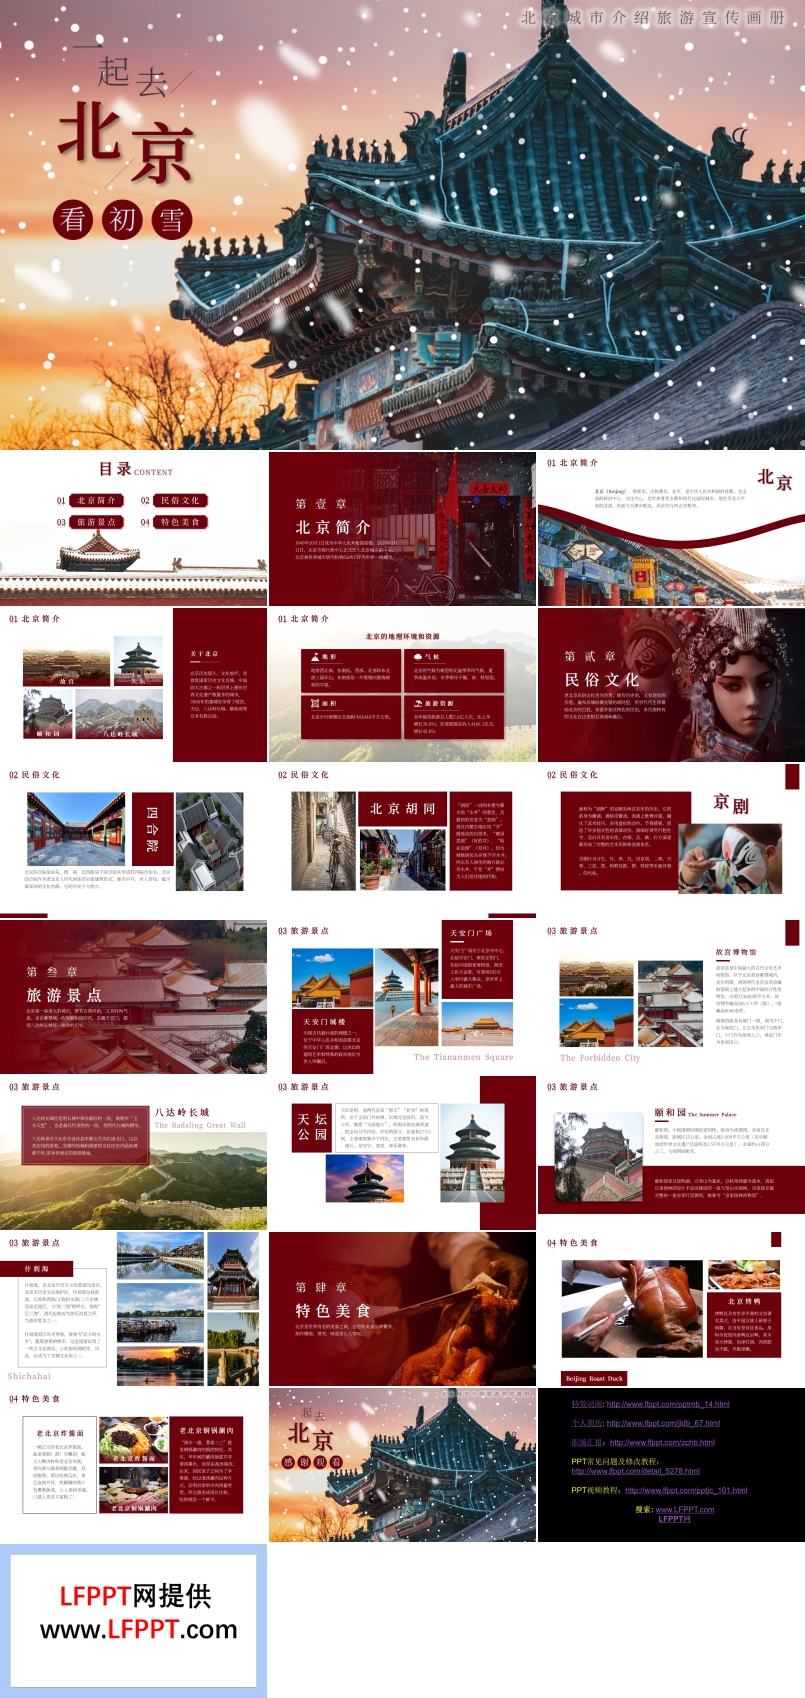 北京旅游旅行宣传画册PPT模板免费下载